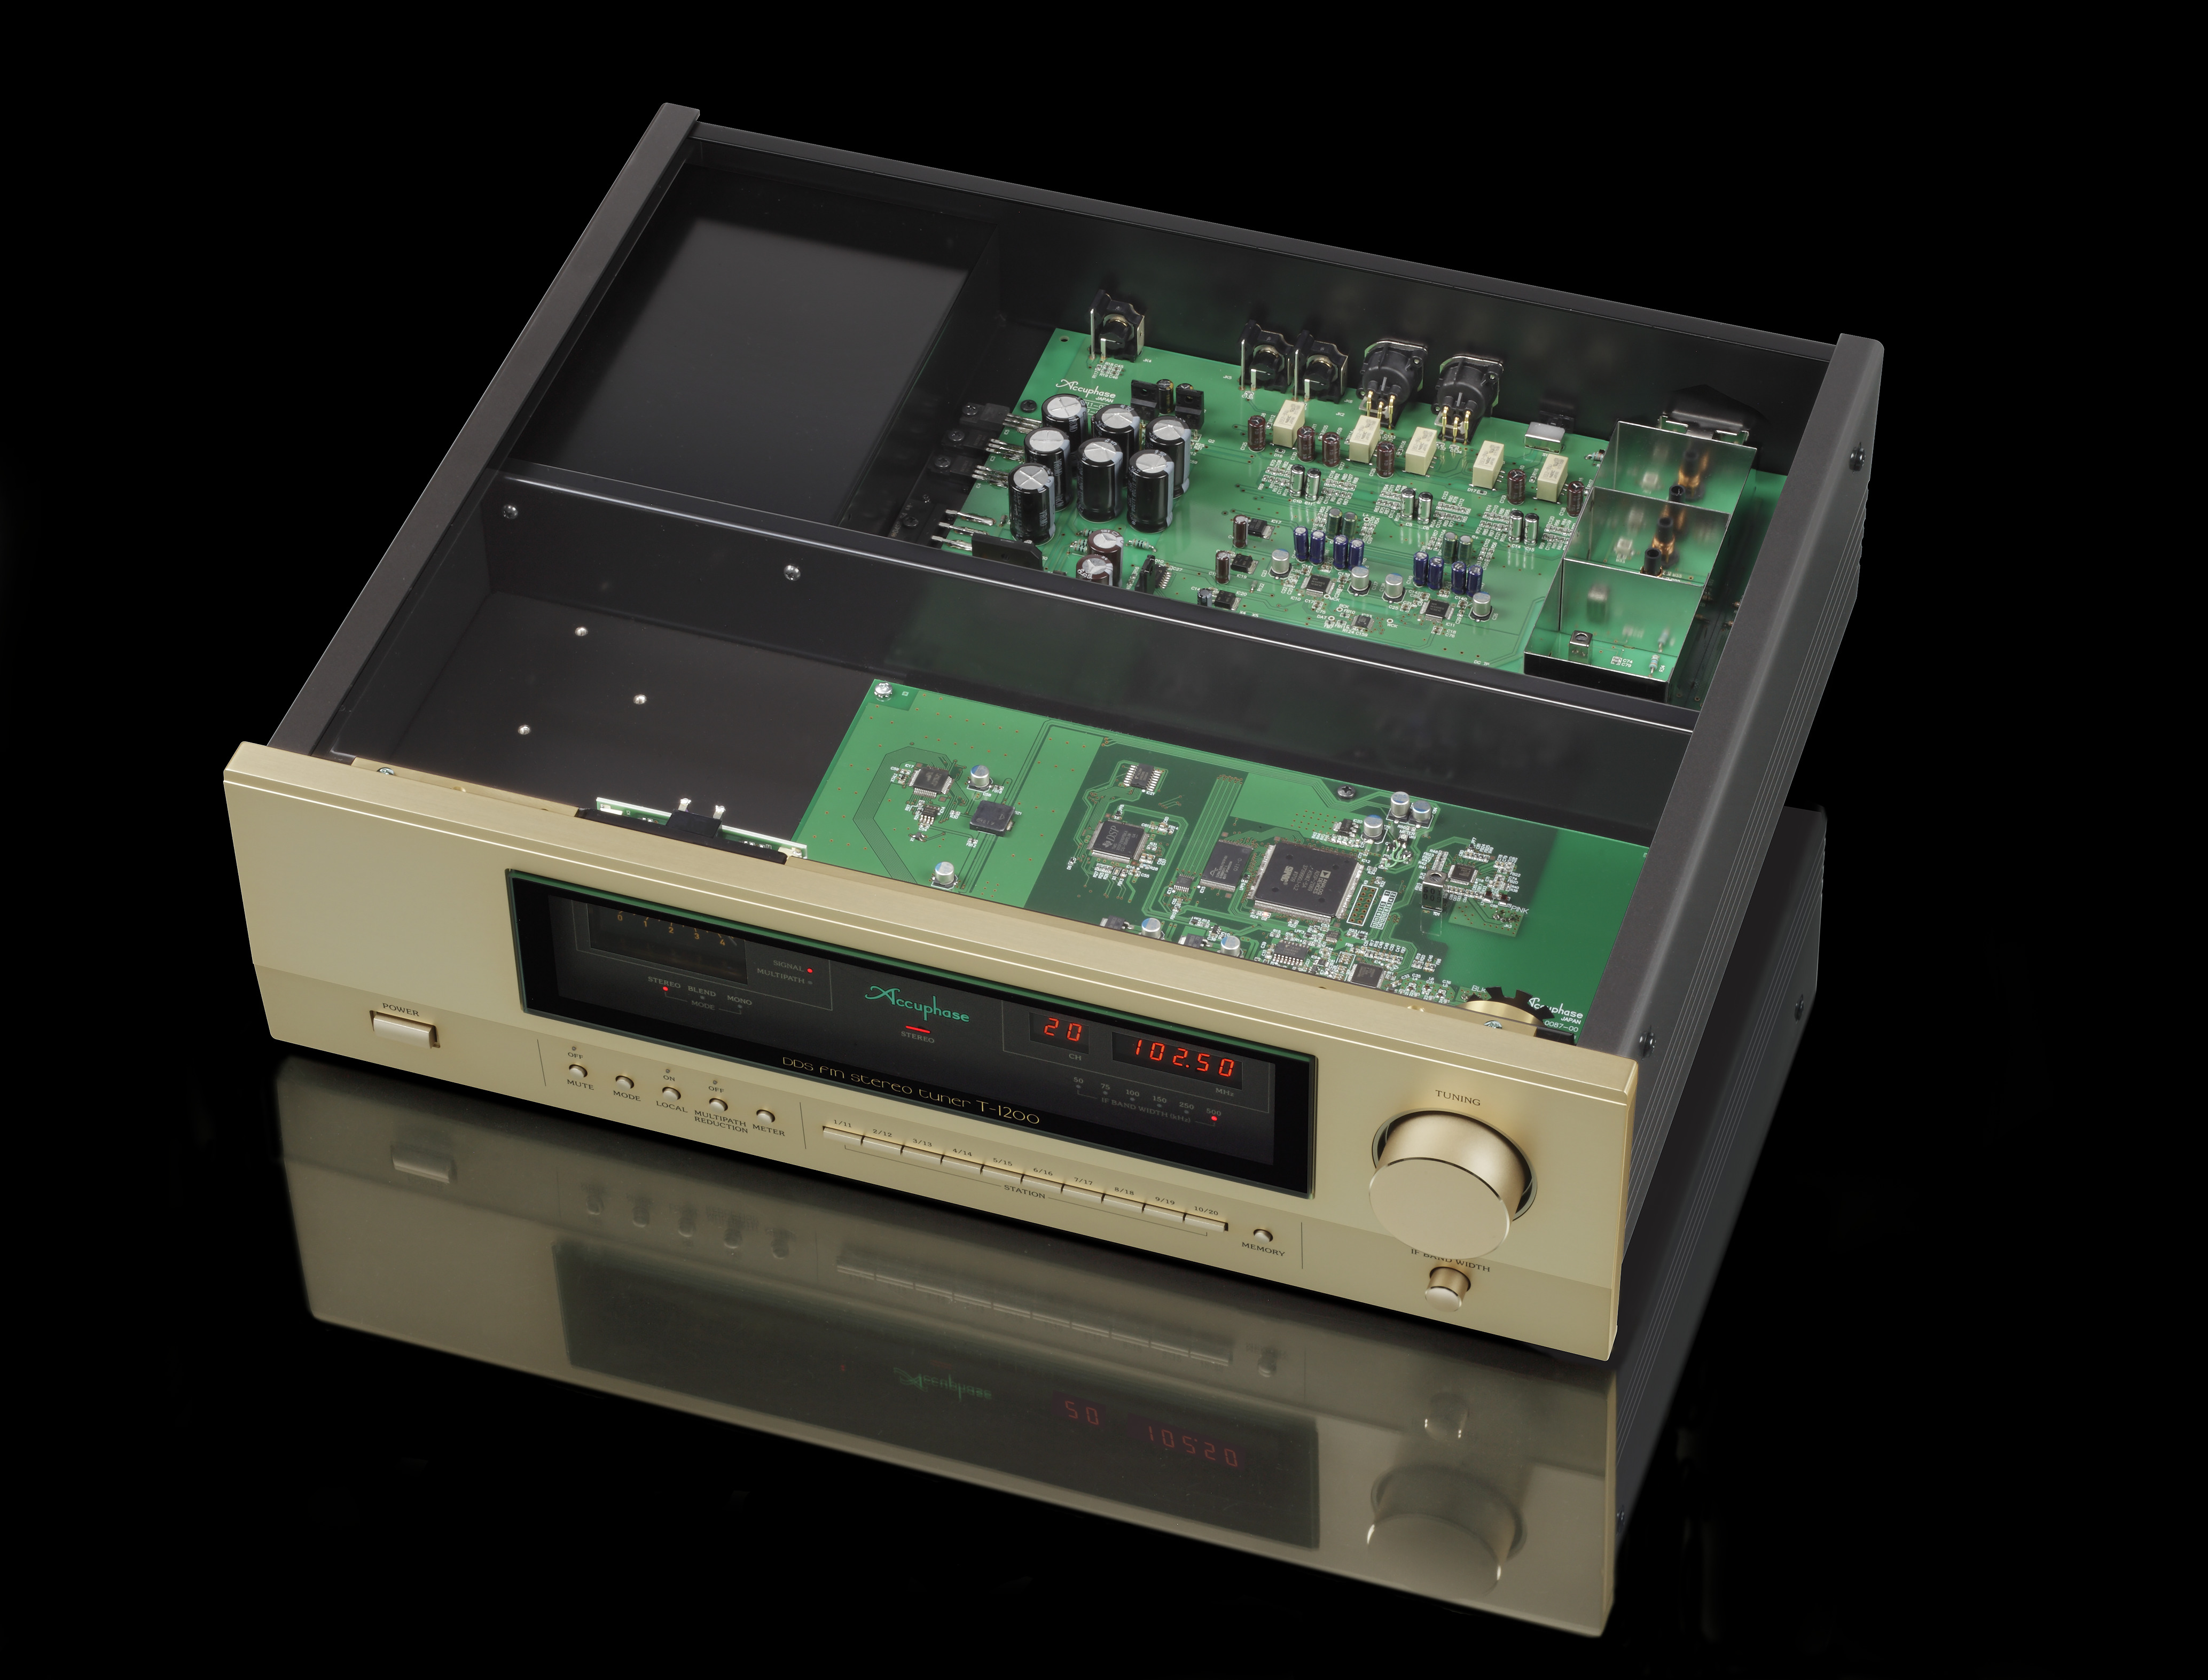 Accuphase T-1200 UKW-Empfänger mit geöffnetem Gehäuse und geöffnetem Digital-Synthesizer